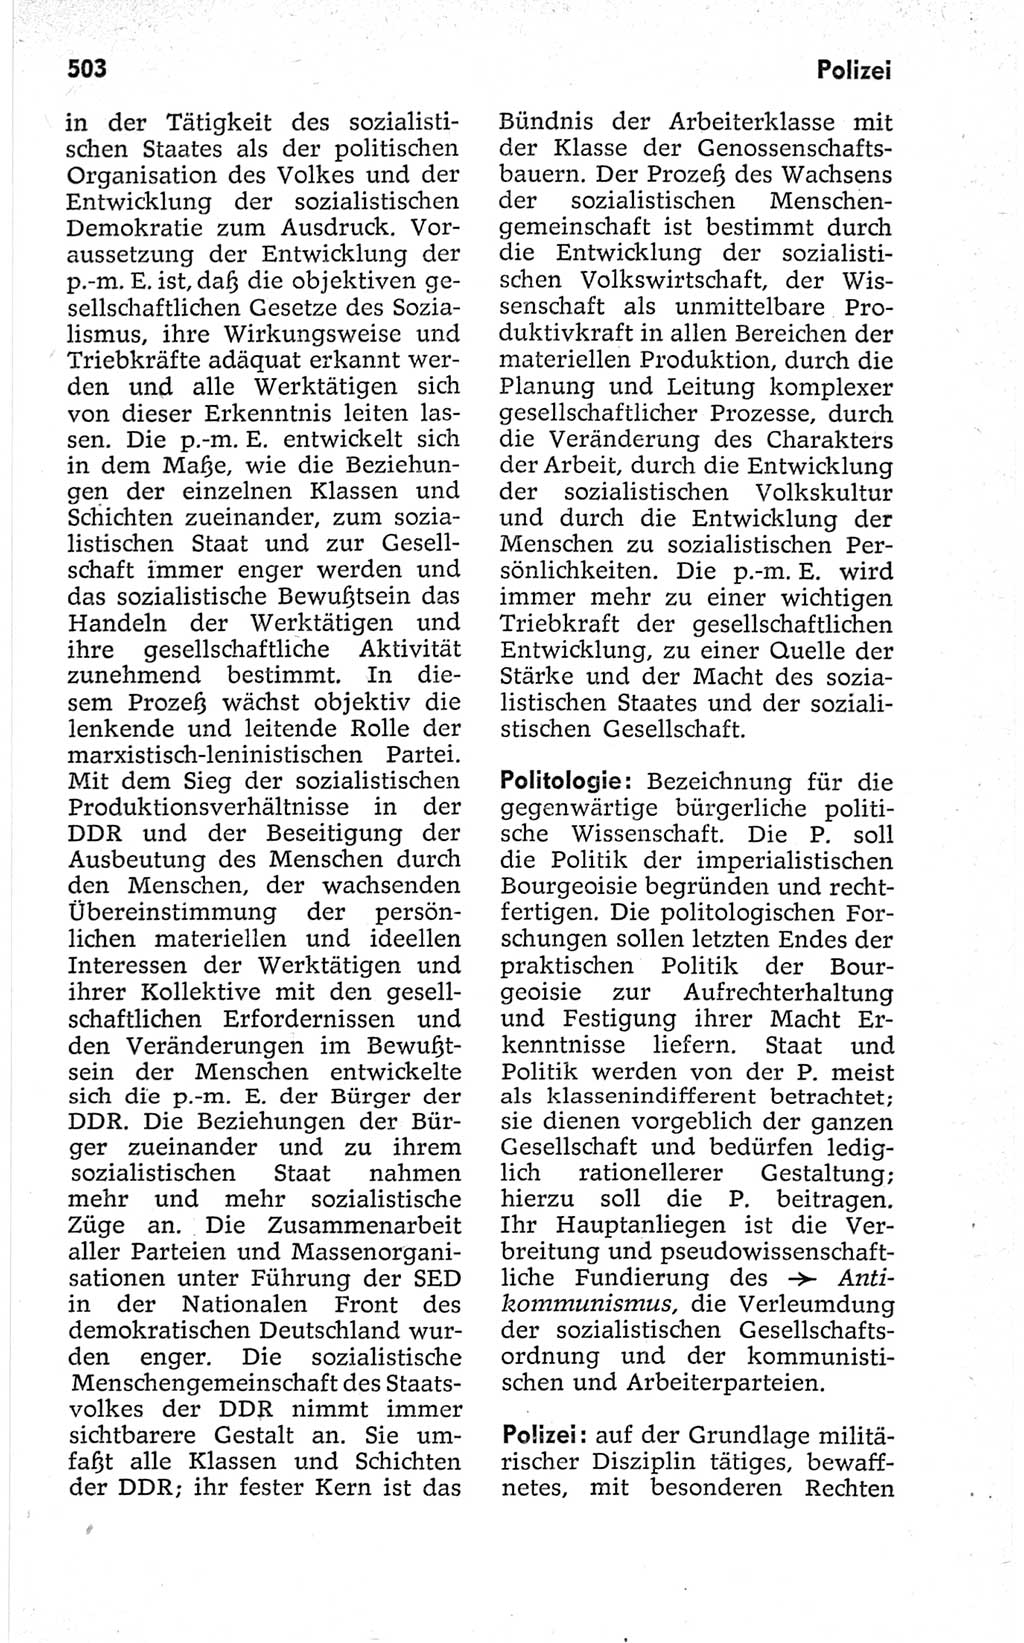 Kleines politisches Wörterbuch [Deutsche Demokratische Republik (DDR)] 1967, Seite 503 (Kl. pol. Wb. DDR 1967, S. 503)